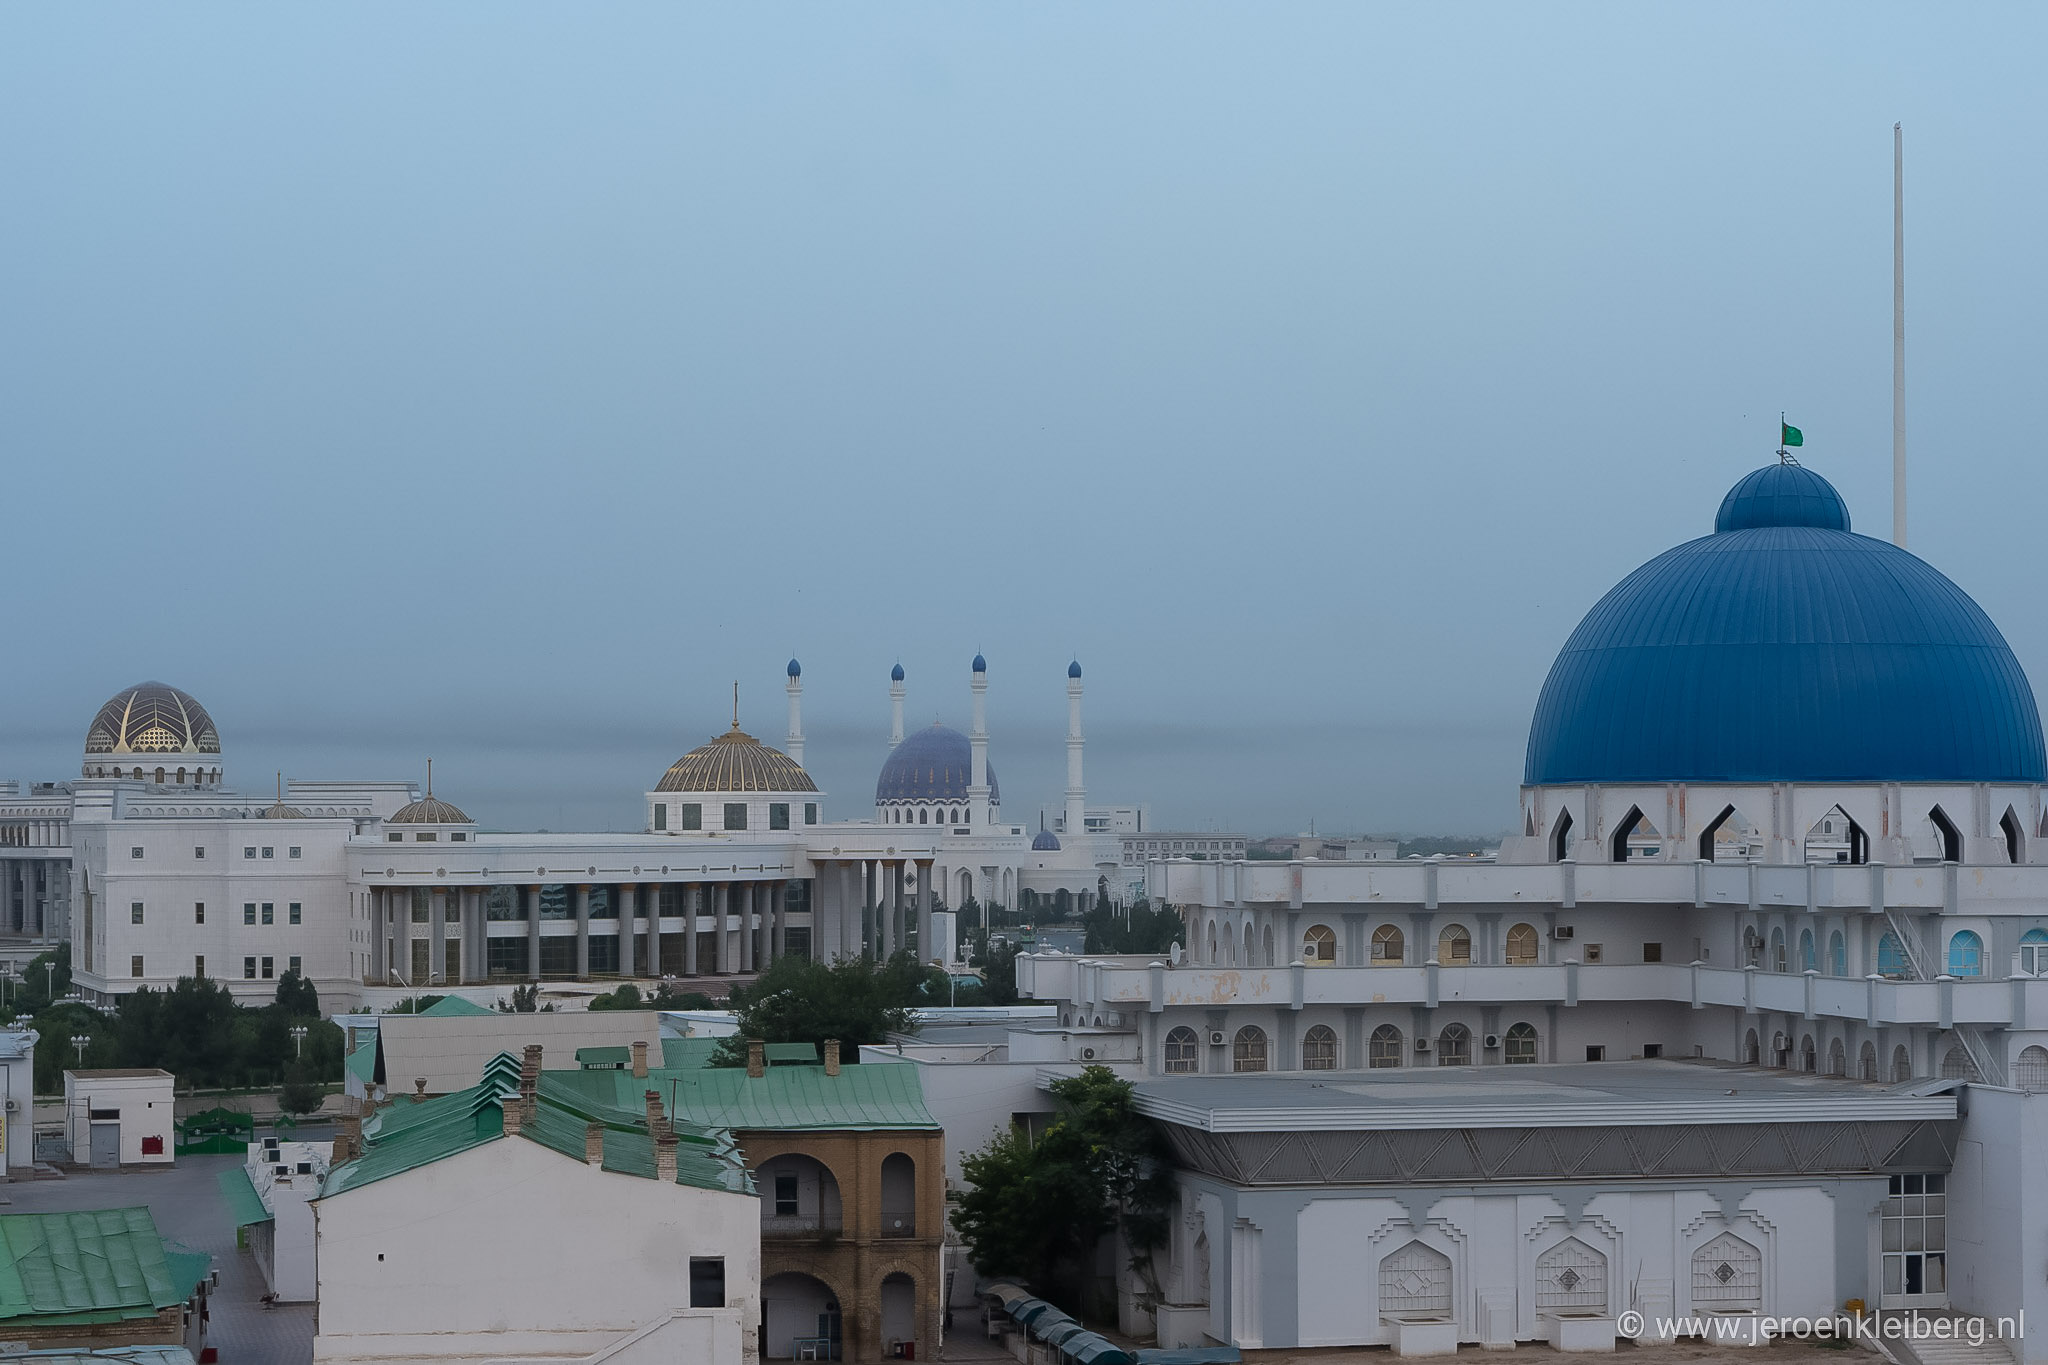 Stadsgezicht Turkmenistan met grote witte marmeren gebouwen en blauwe koepels